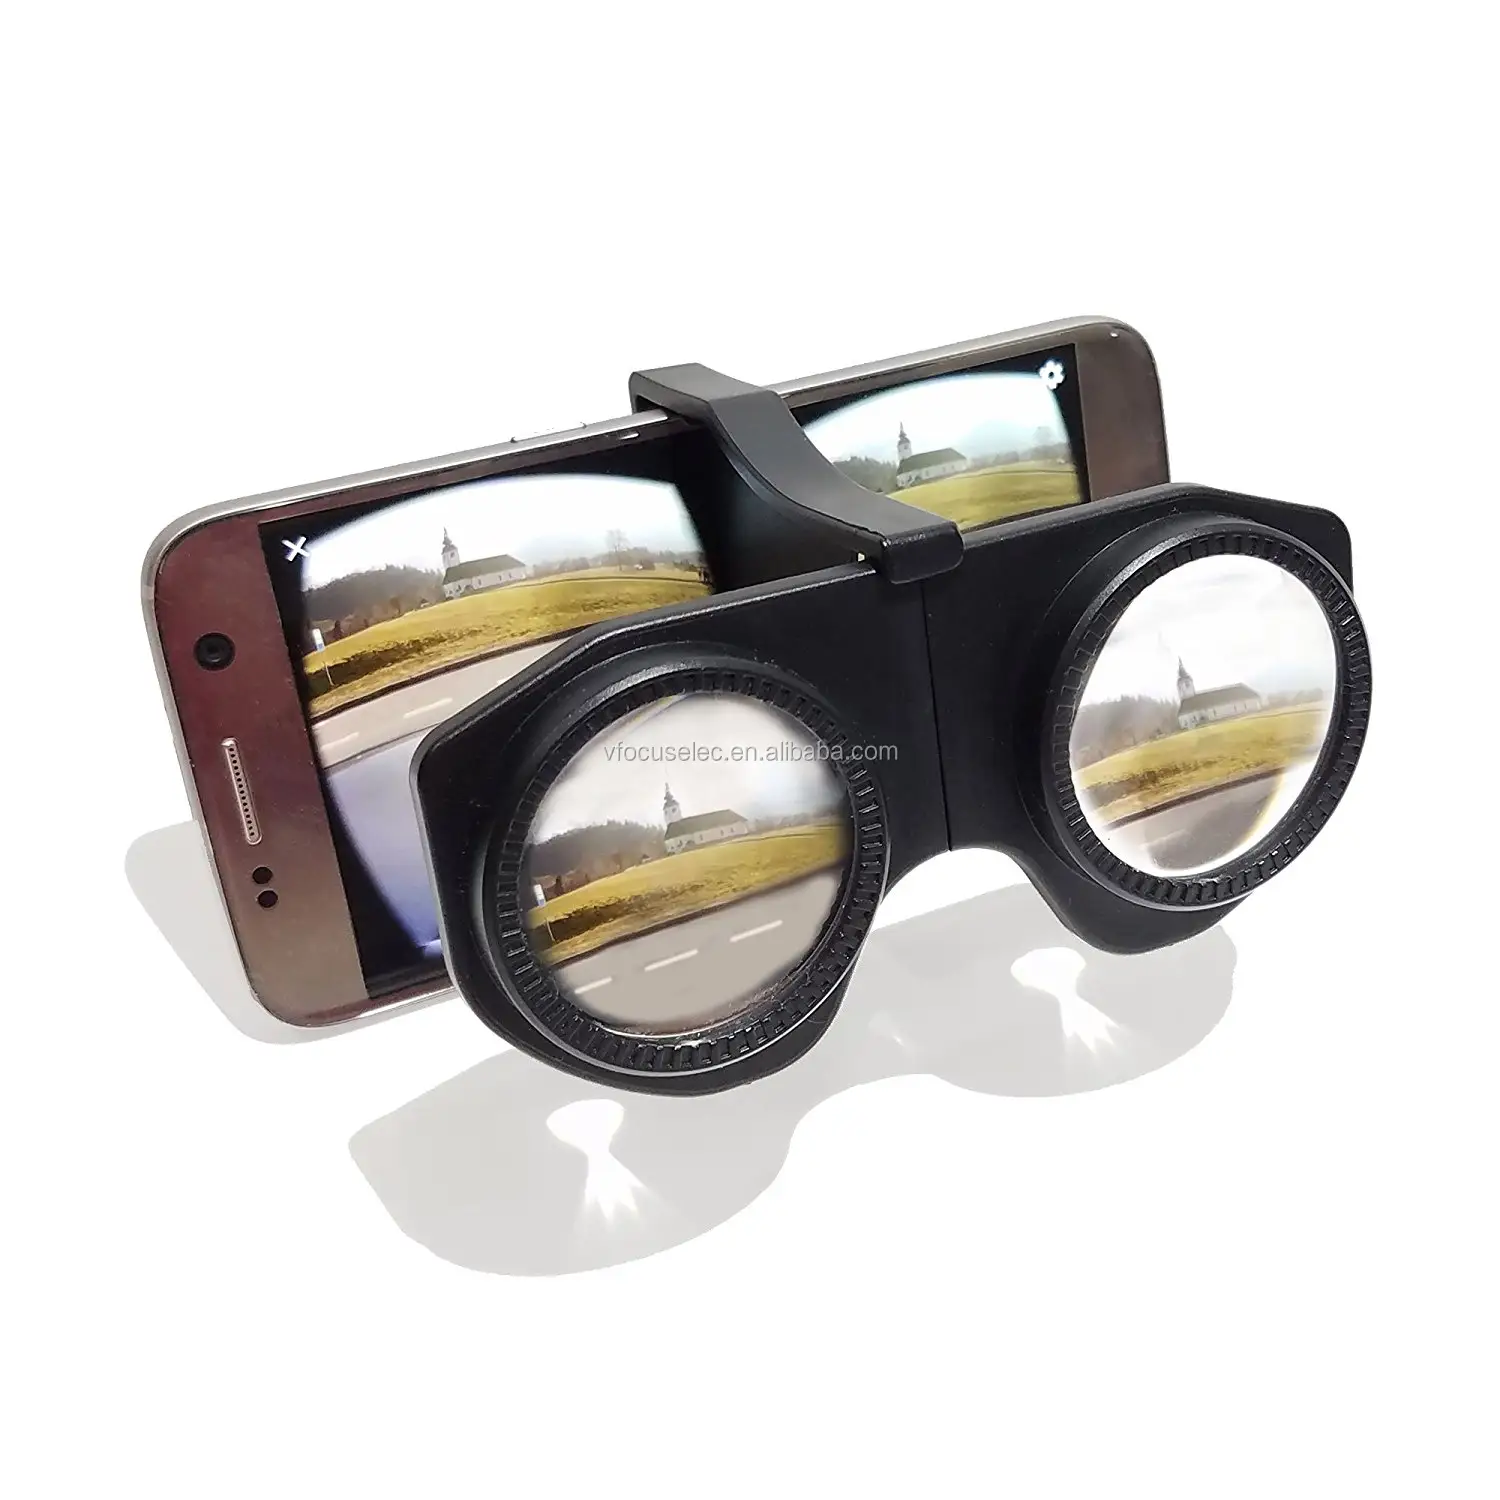 Пластиковые складные очки виртуальной реальности с HD-объективом виртуальной реальности, 3D гарнитура виртуальной реальности, совместимая со смартфонами Android и iOS